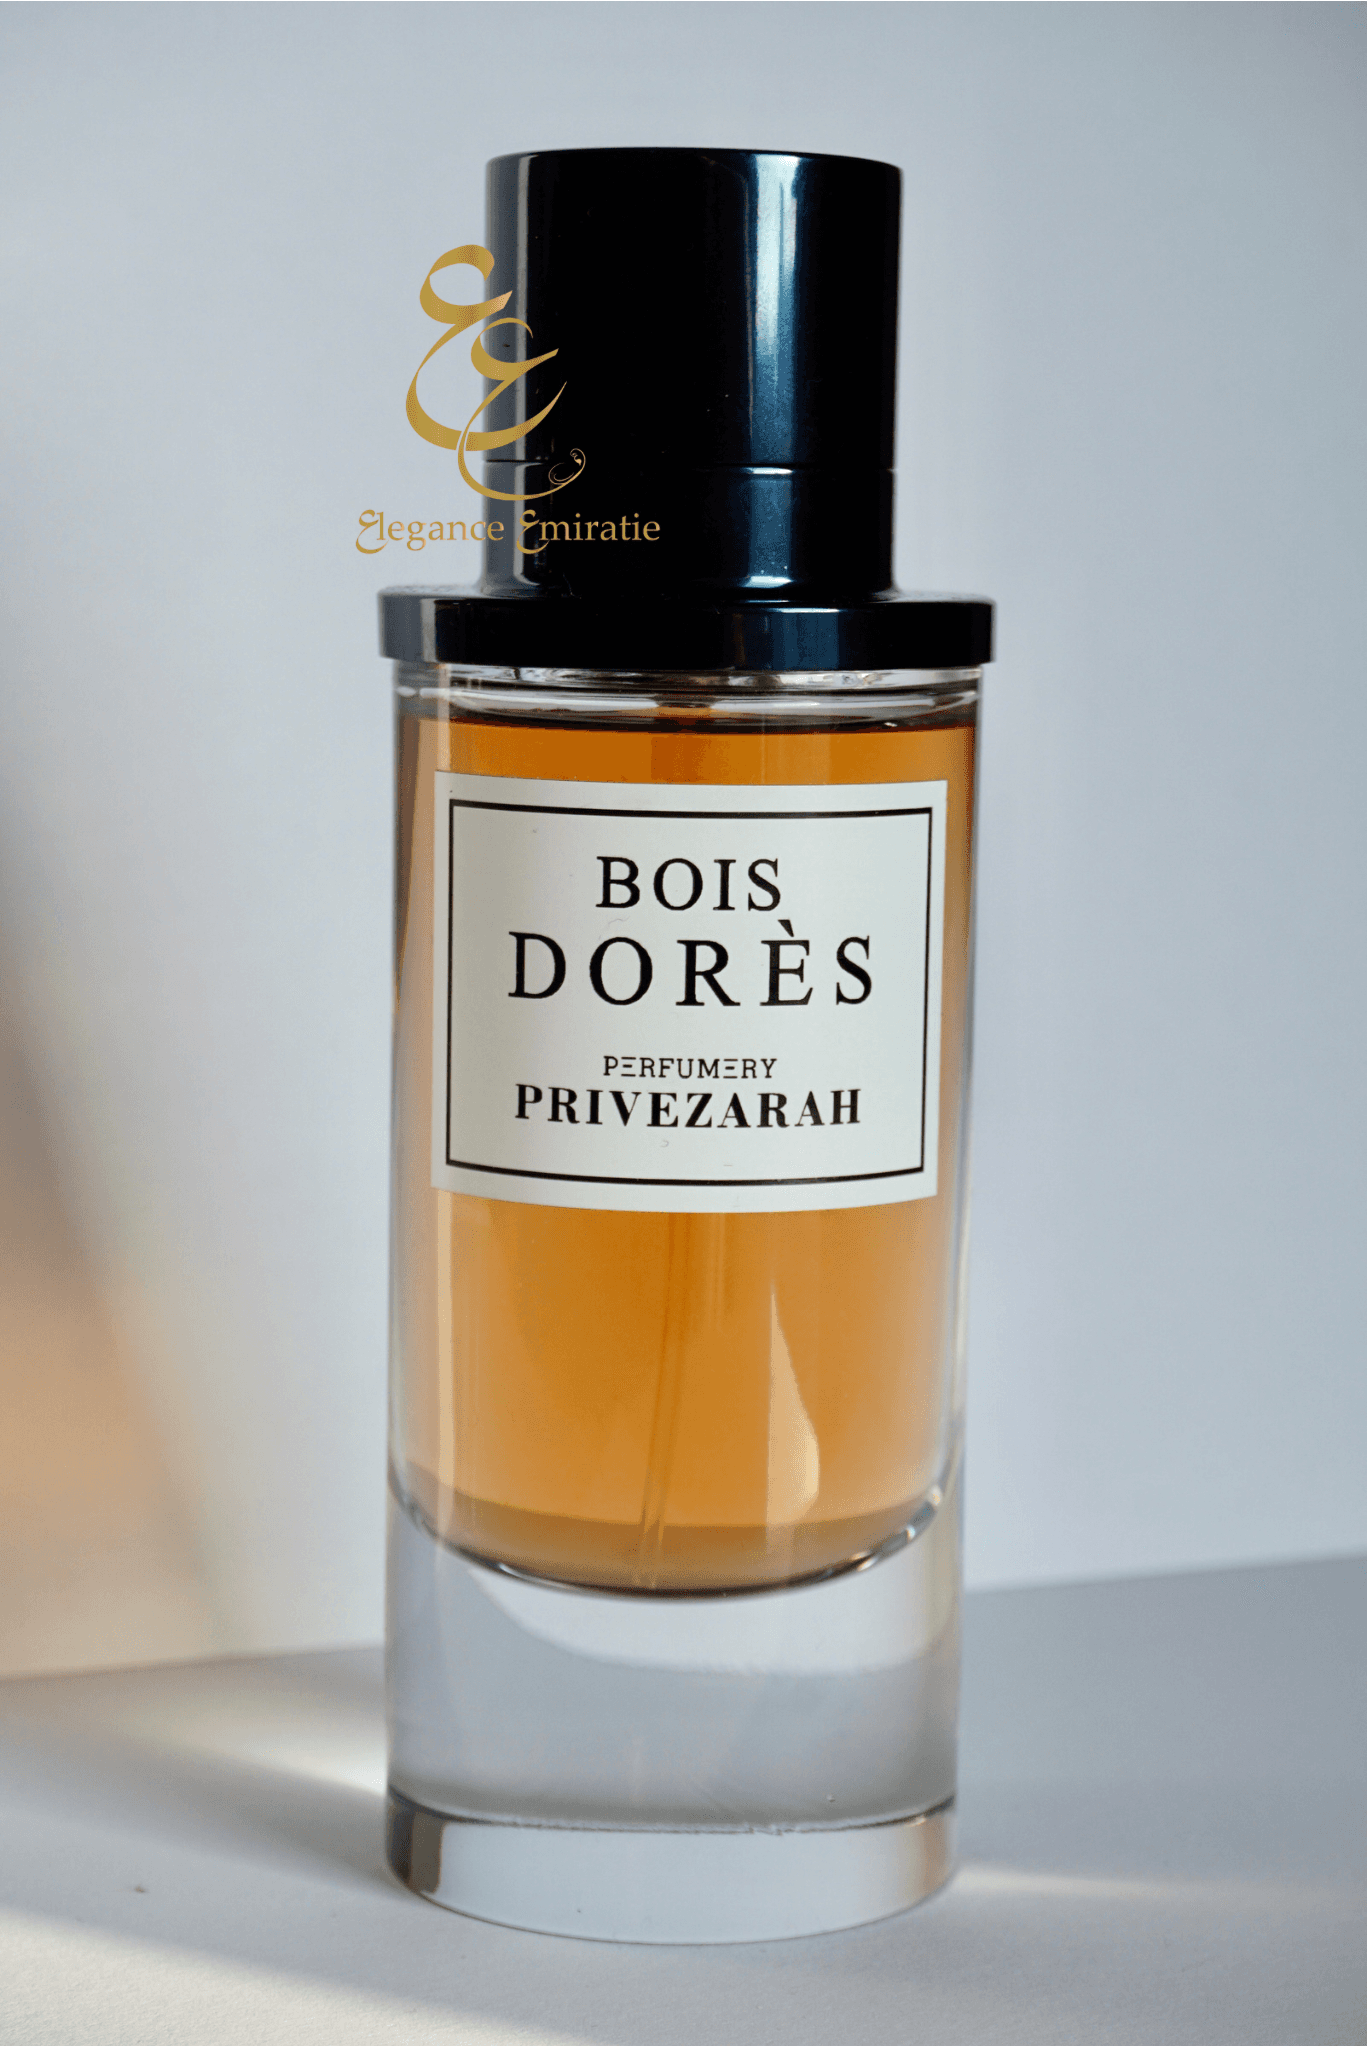 BOIS DORÈS Eau de parfum